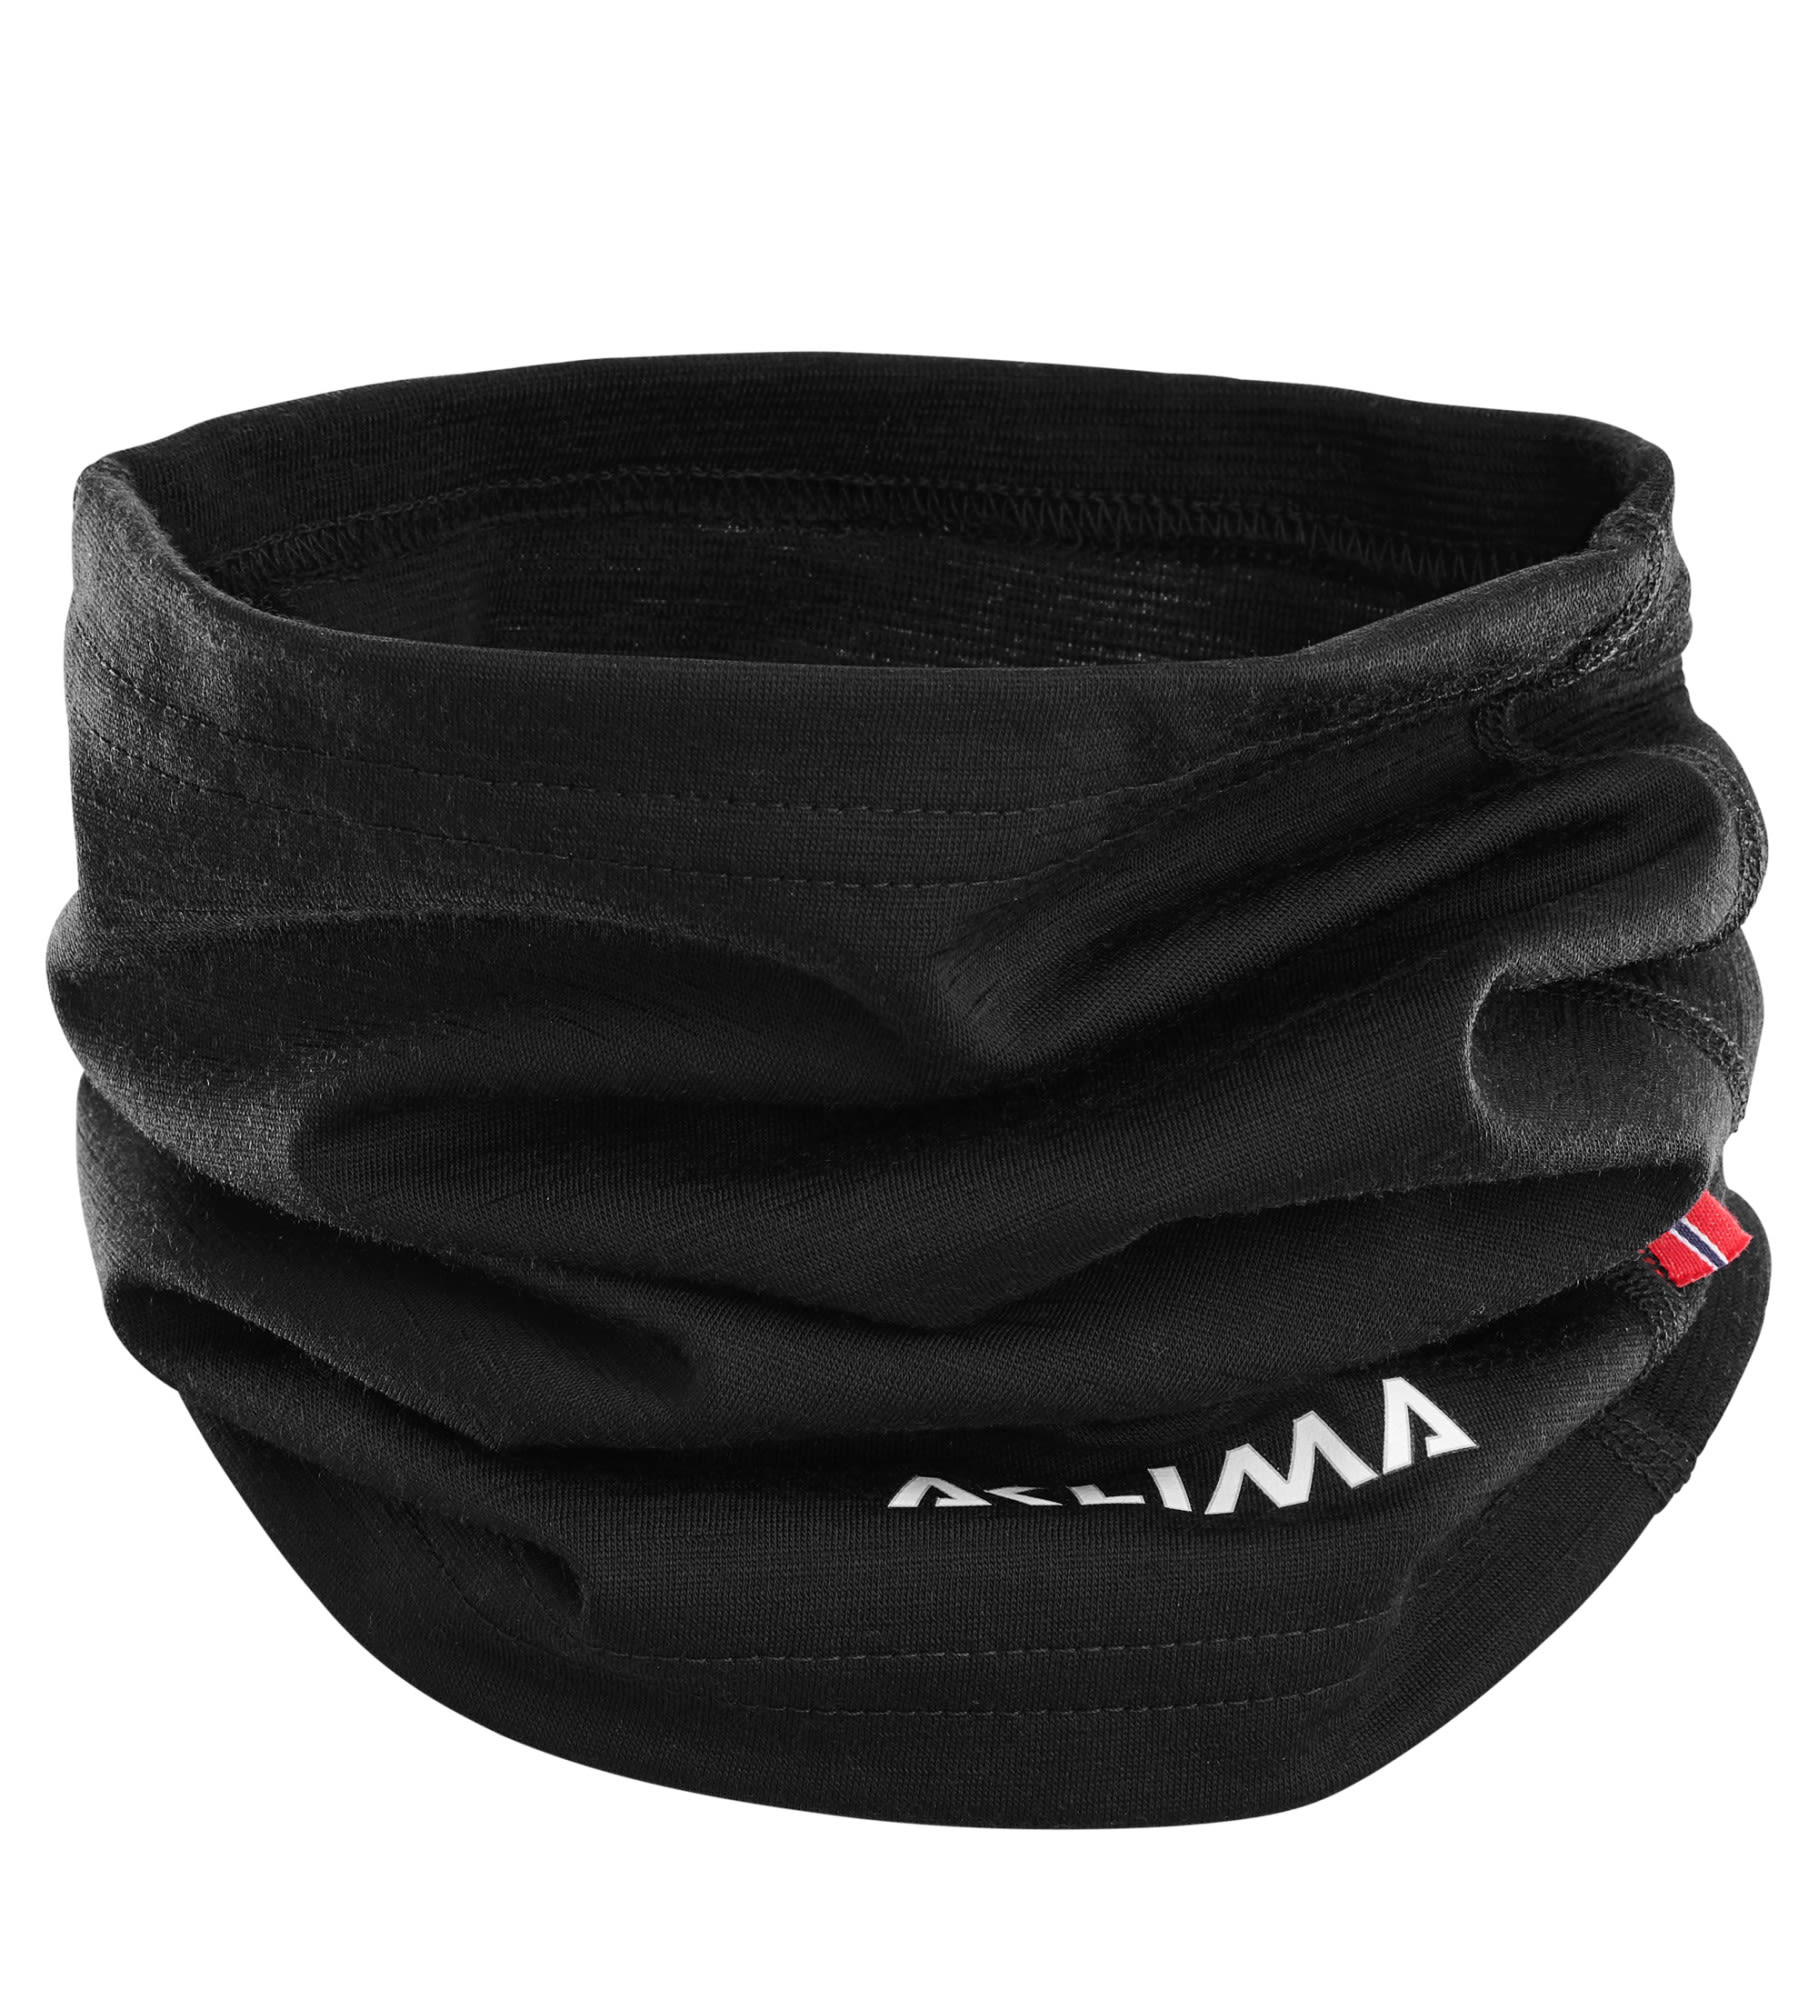 Aclima Warmwool Headover Schwarz- Merino Schals und Halstcher- Grsse One Size - Farbe Jet Black unter Aclima